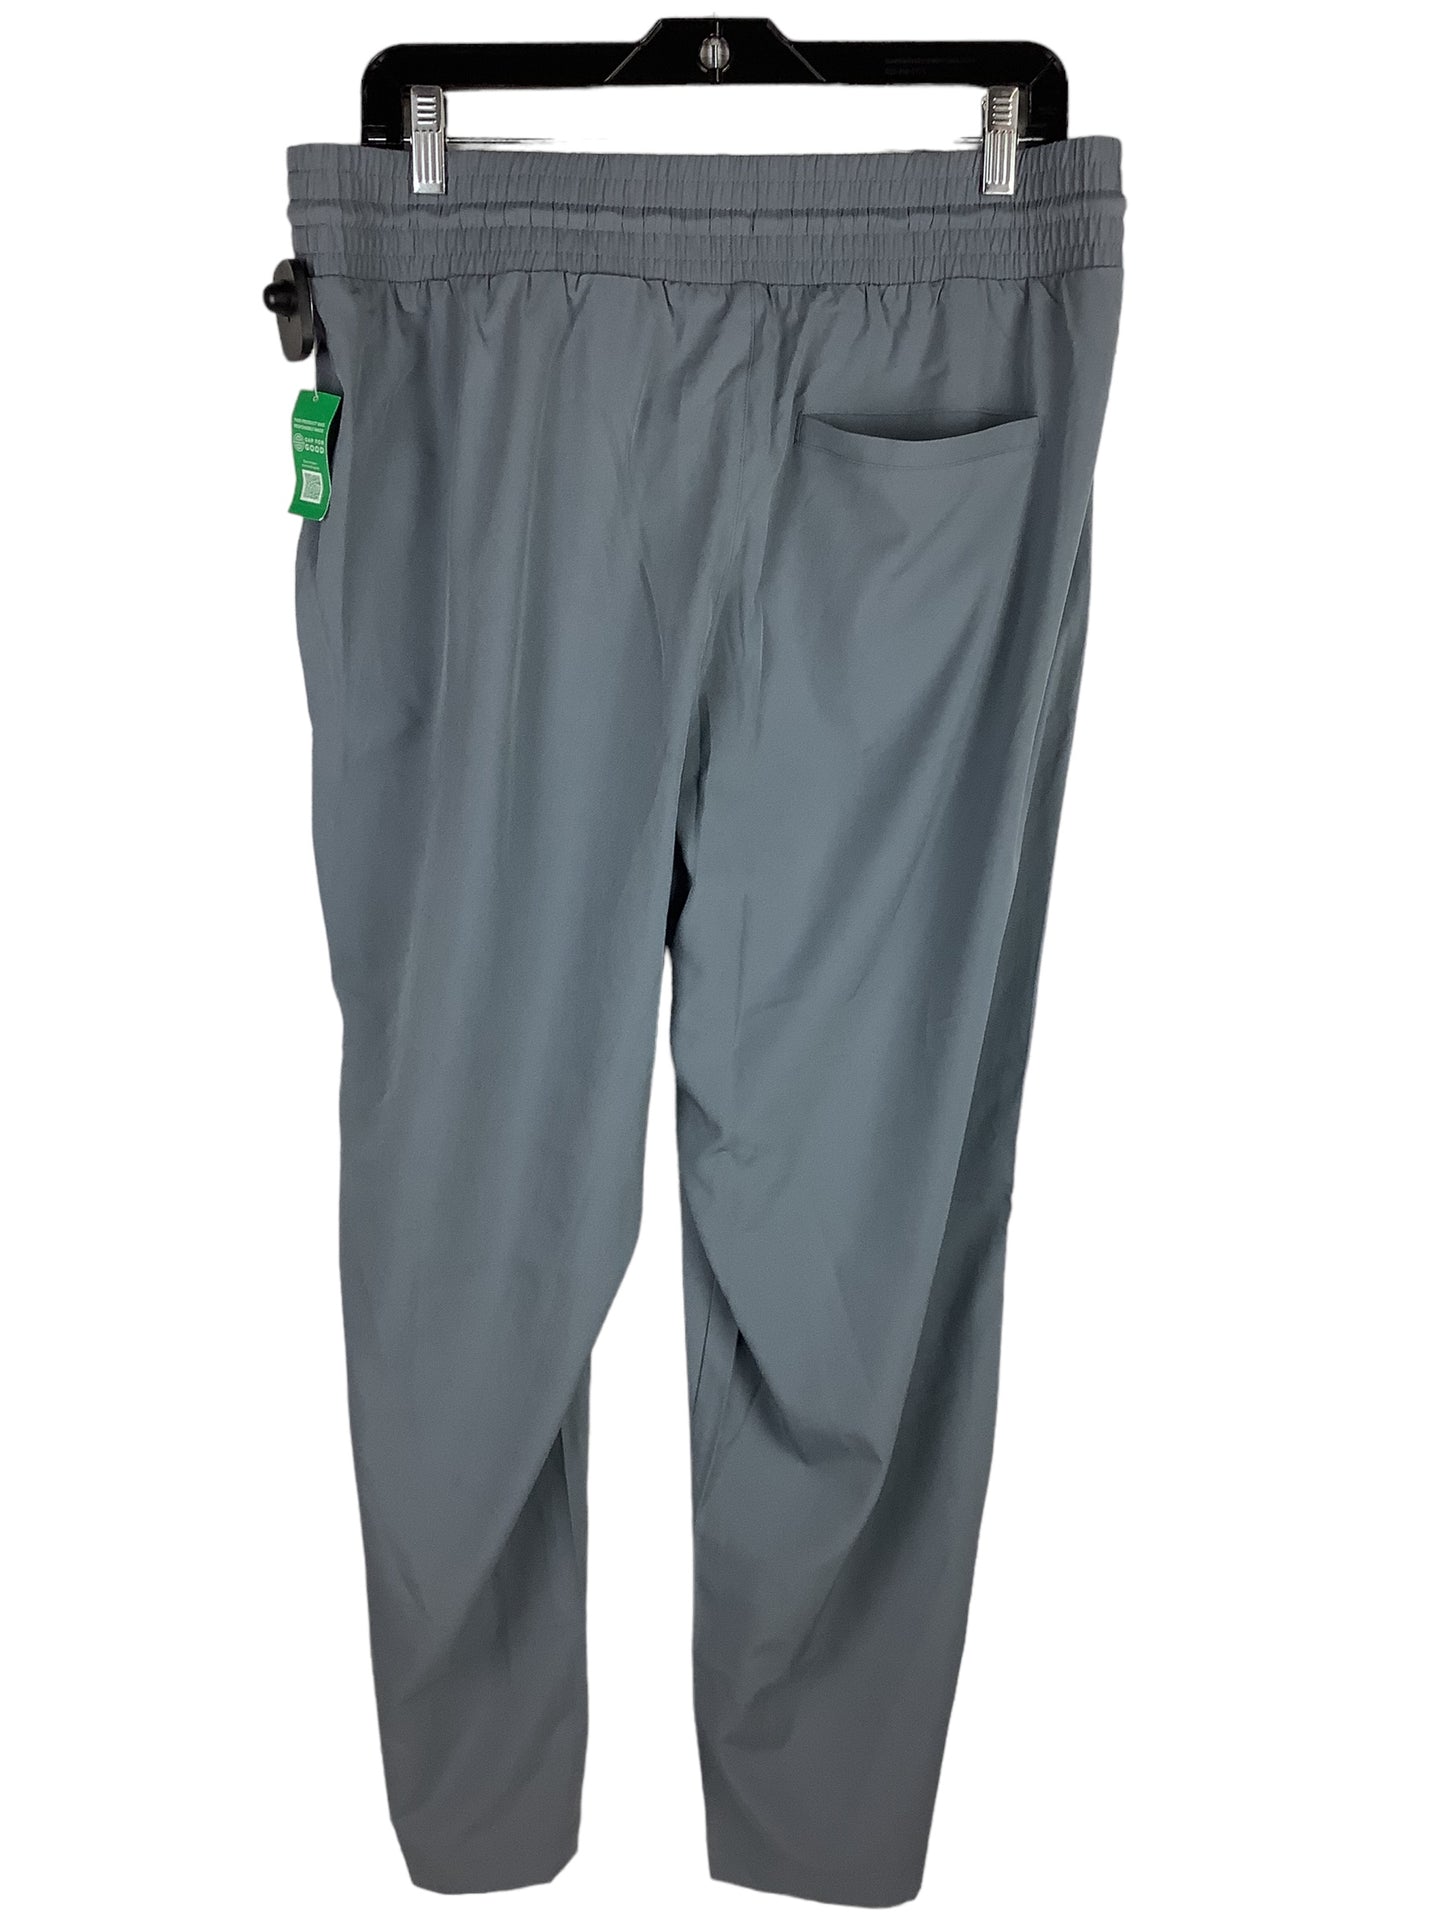 Athletic Pants By Gapfit  Size: L